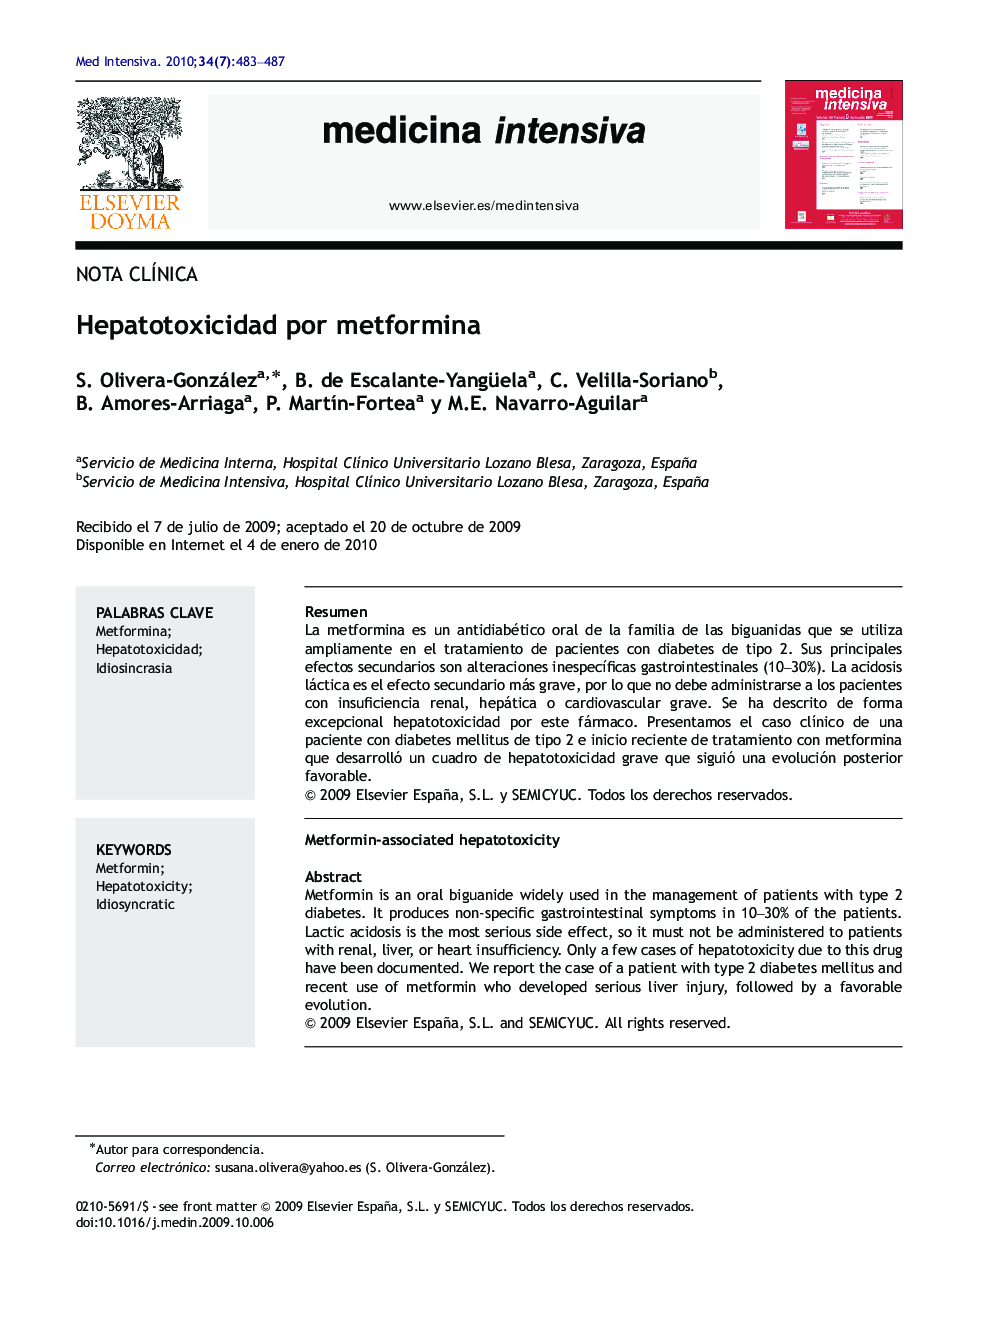 Hepatotoxicidad por metformina